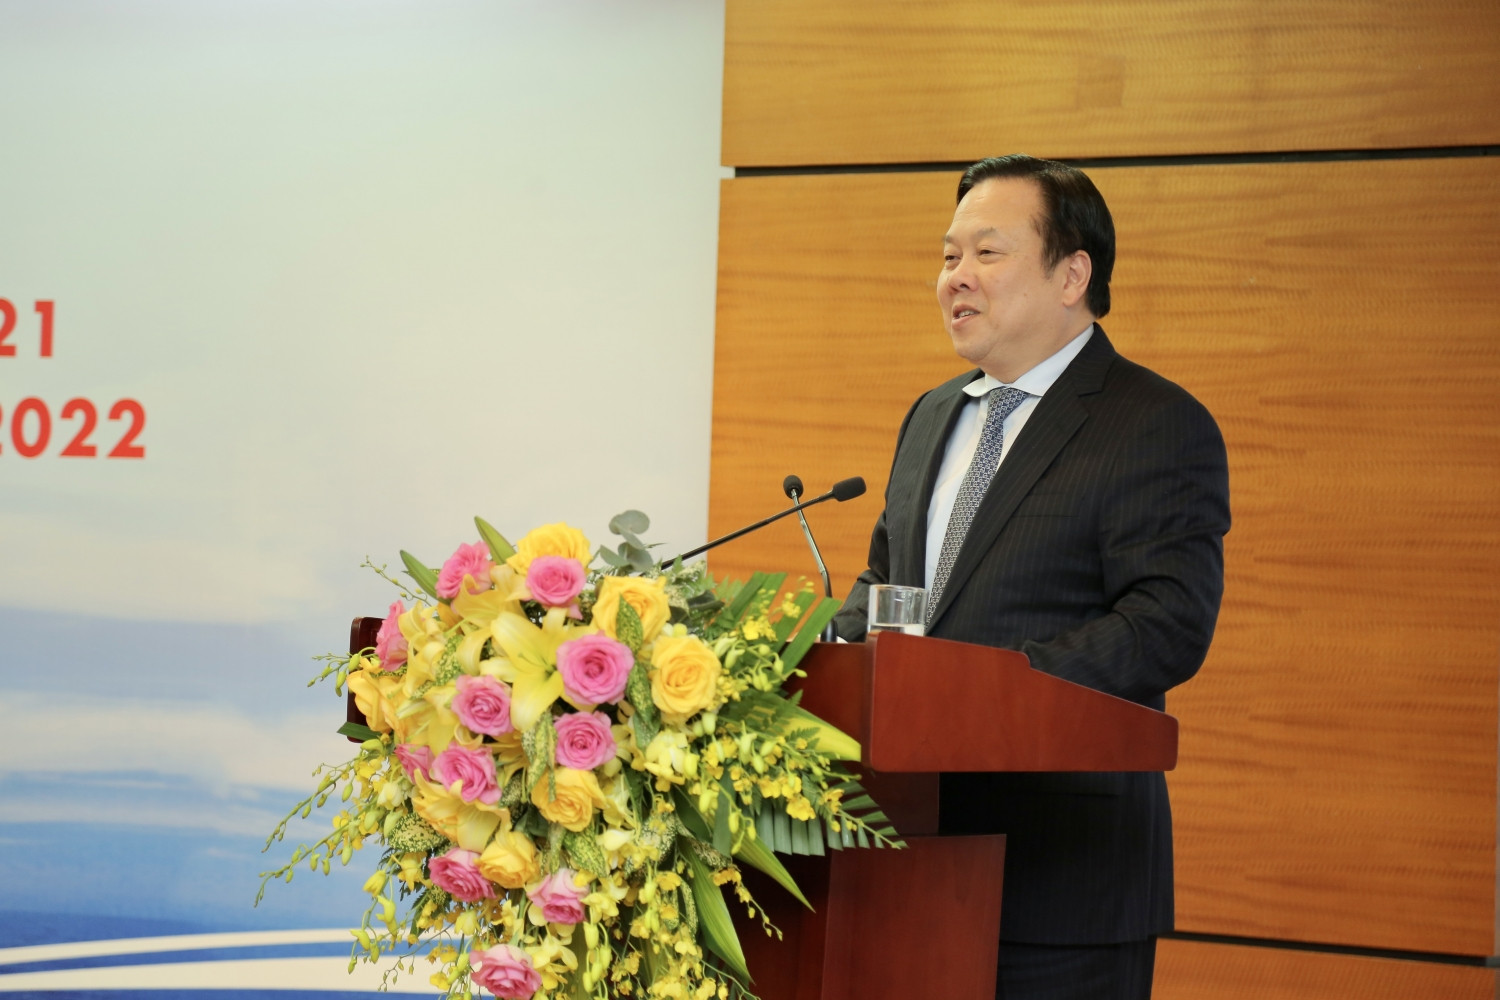 Đồng chí Nguyễn Hoàng Anh - Ủy viên Trung ương Đảng, Chủ tịch Ủy ban QLVNN phát biểu chỉ đạo tại Hội nghị.